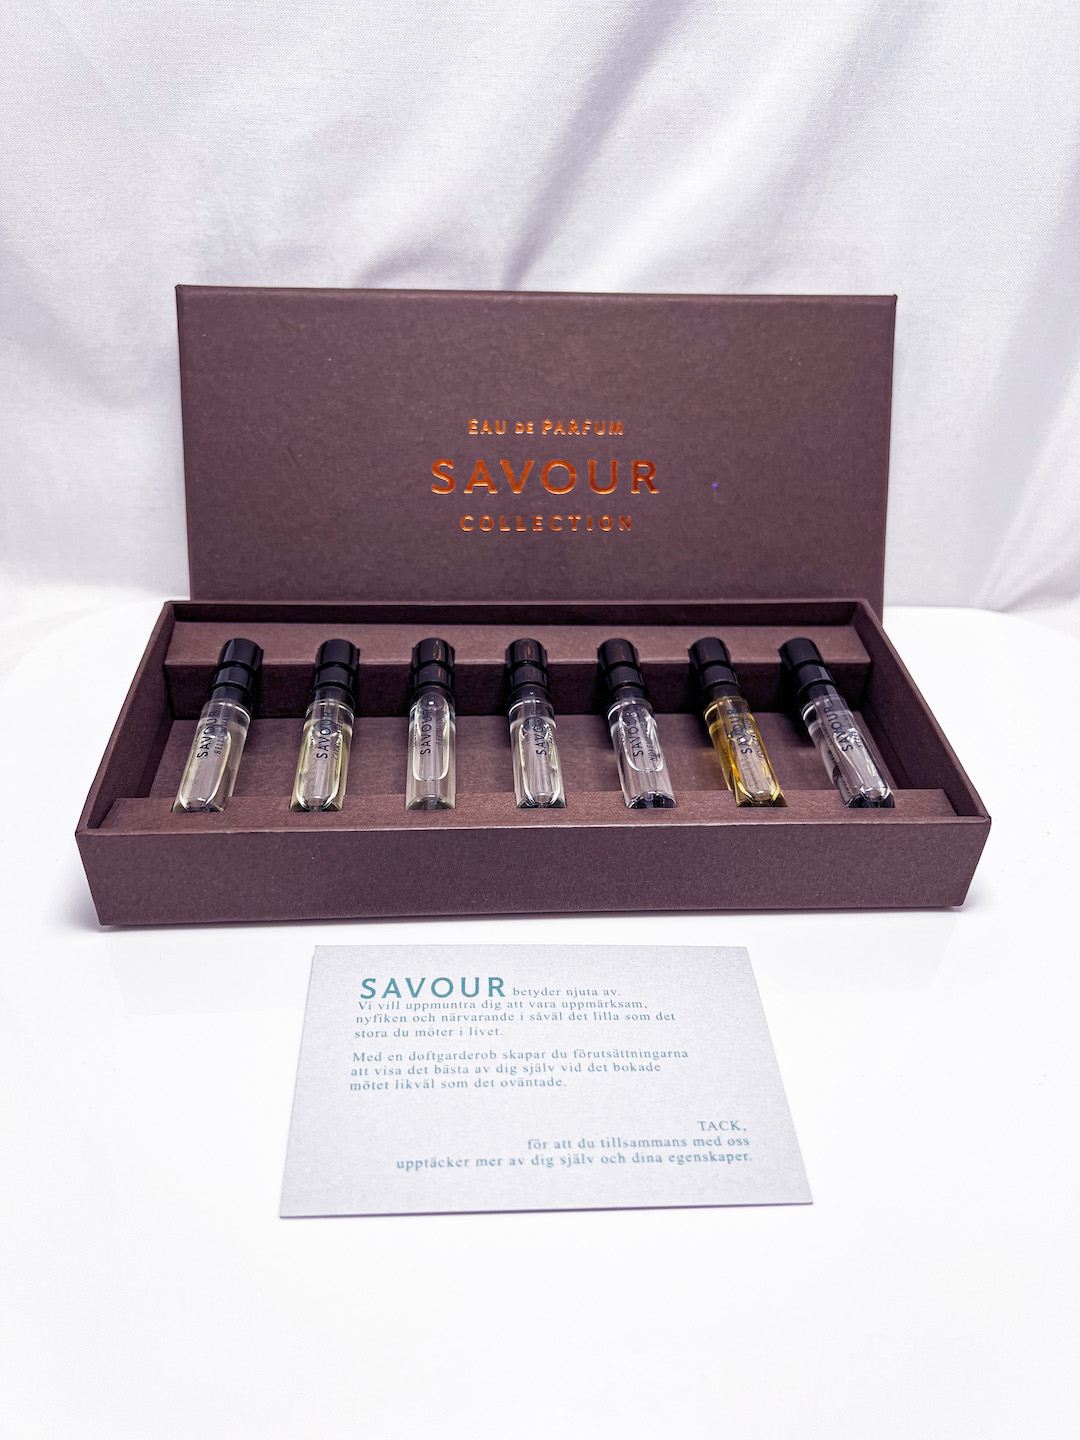 Savour Parfum Discovery kit